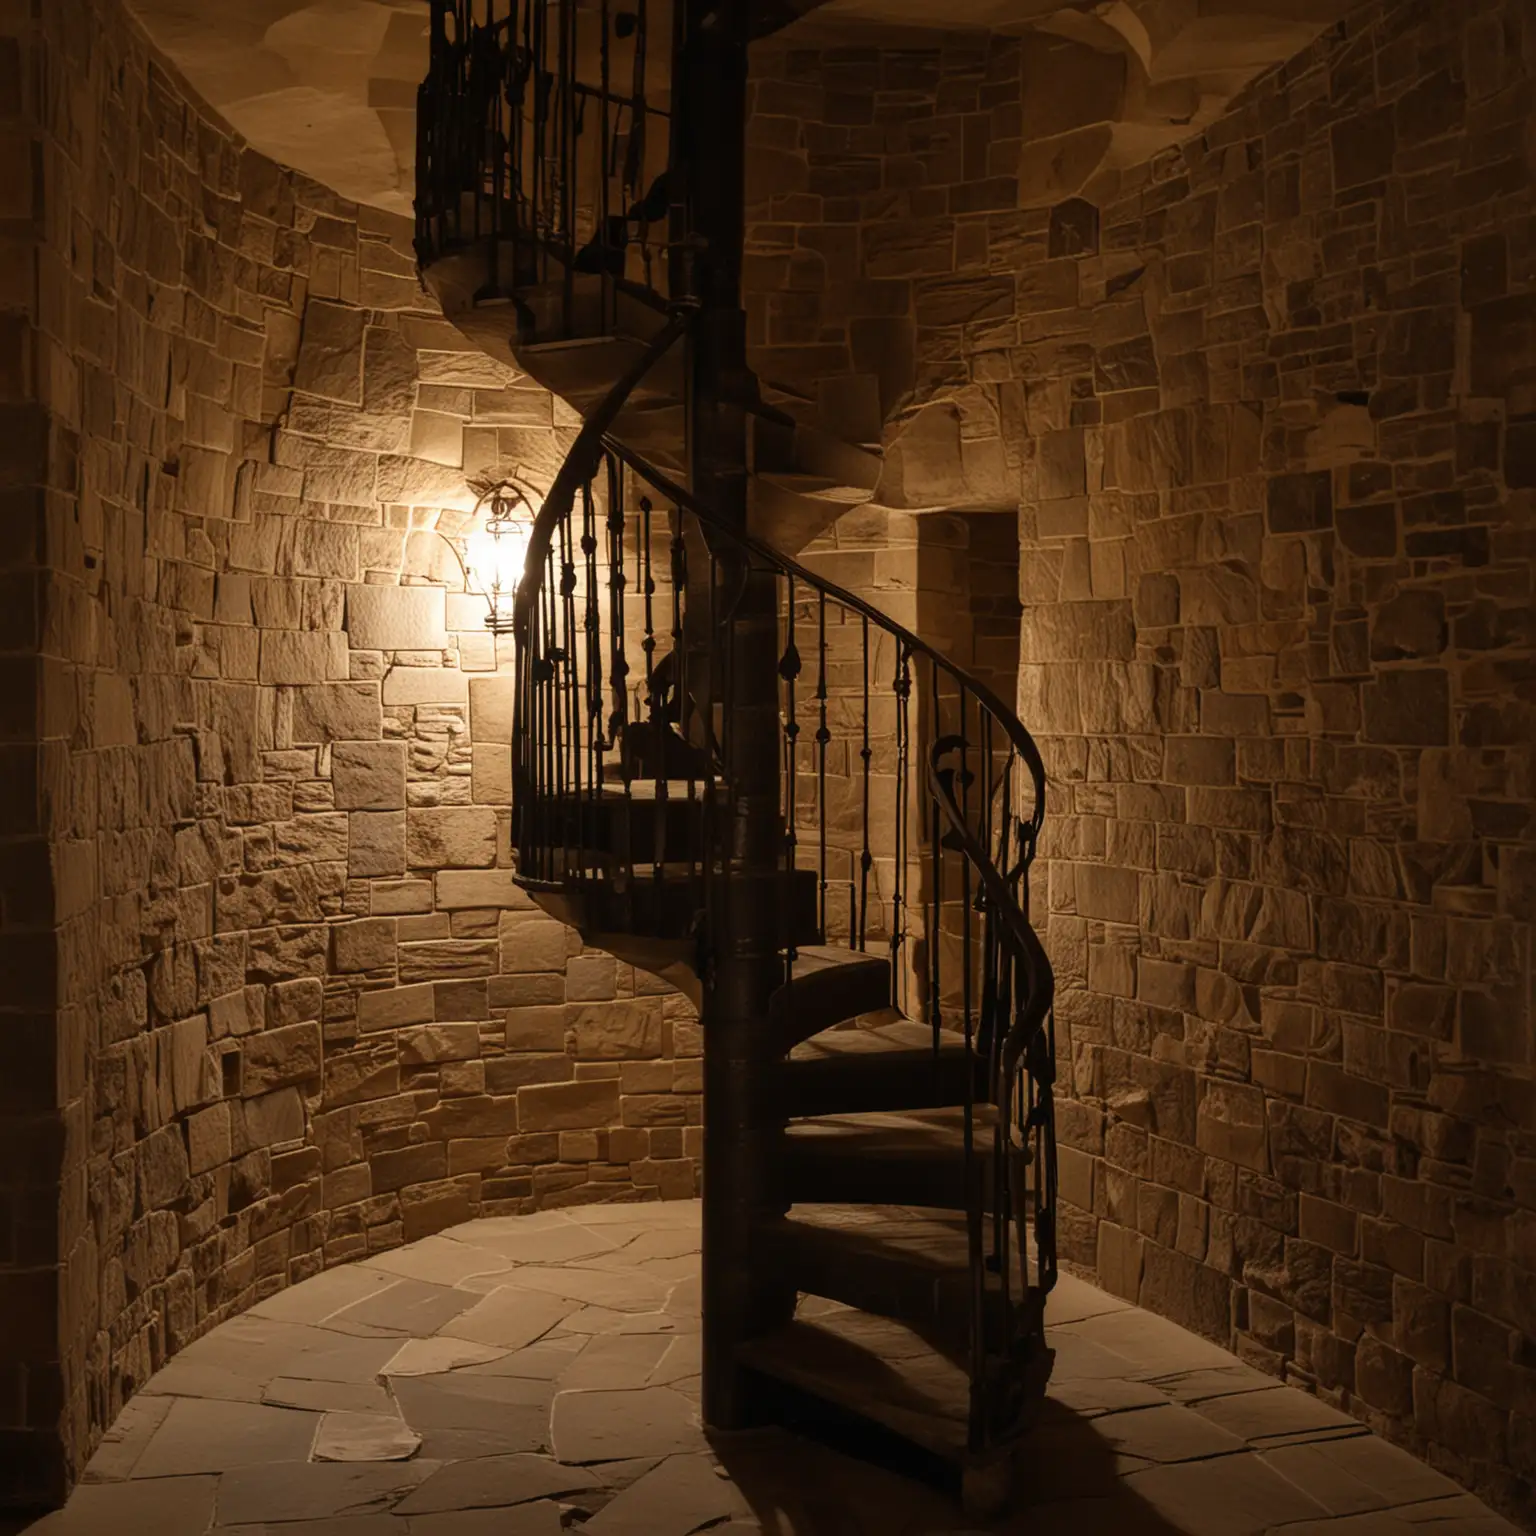 Dark Stone Spiral Staircase Tower Interior